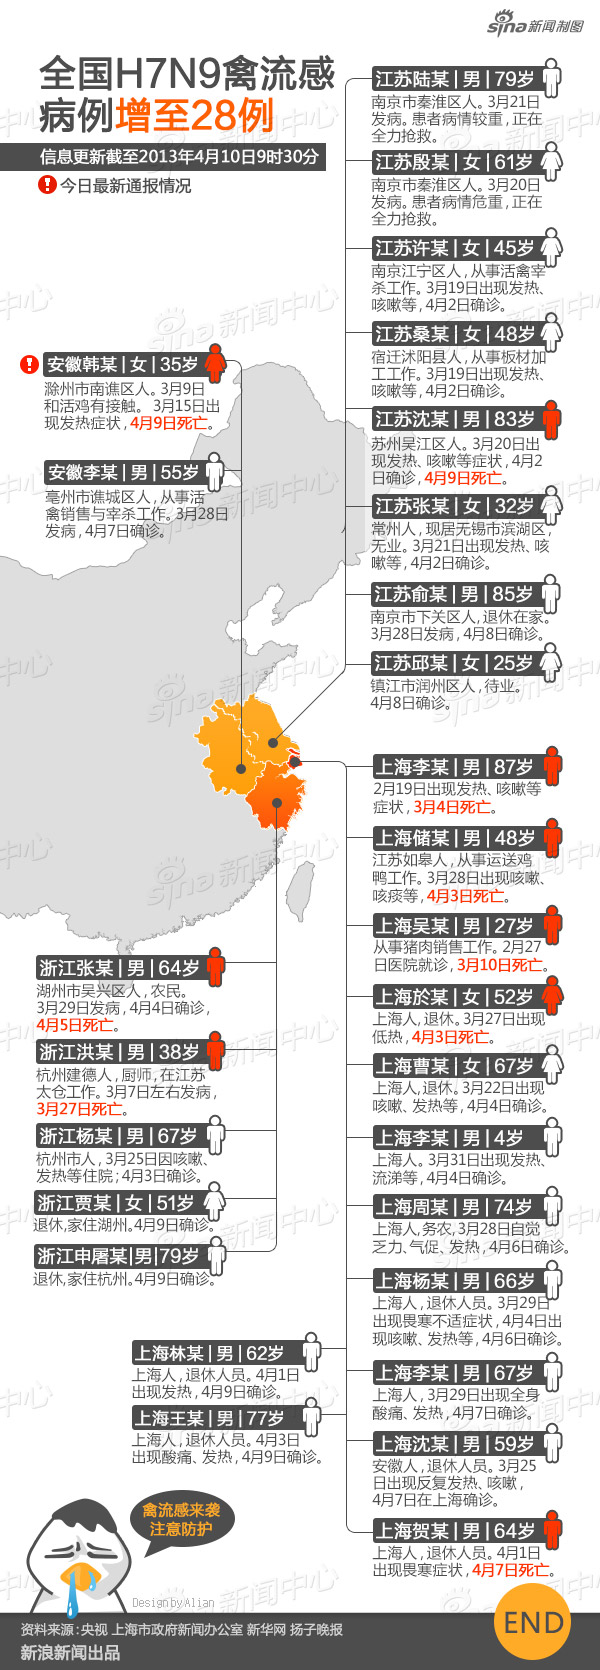 全国h7n9禽流感确诊病例地图